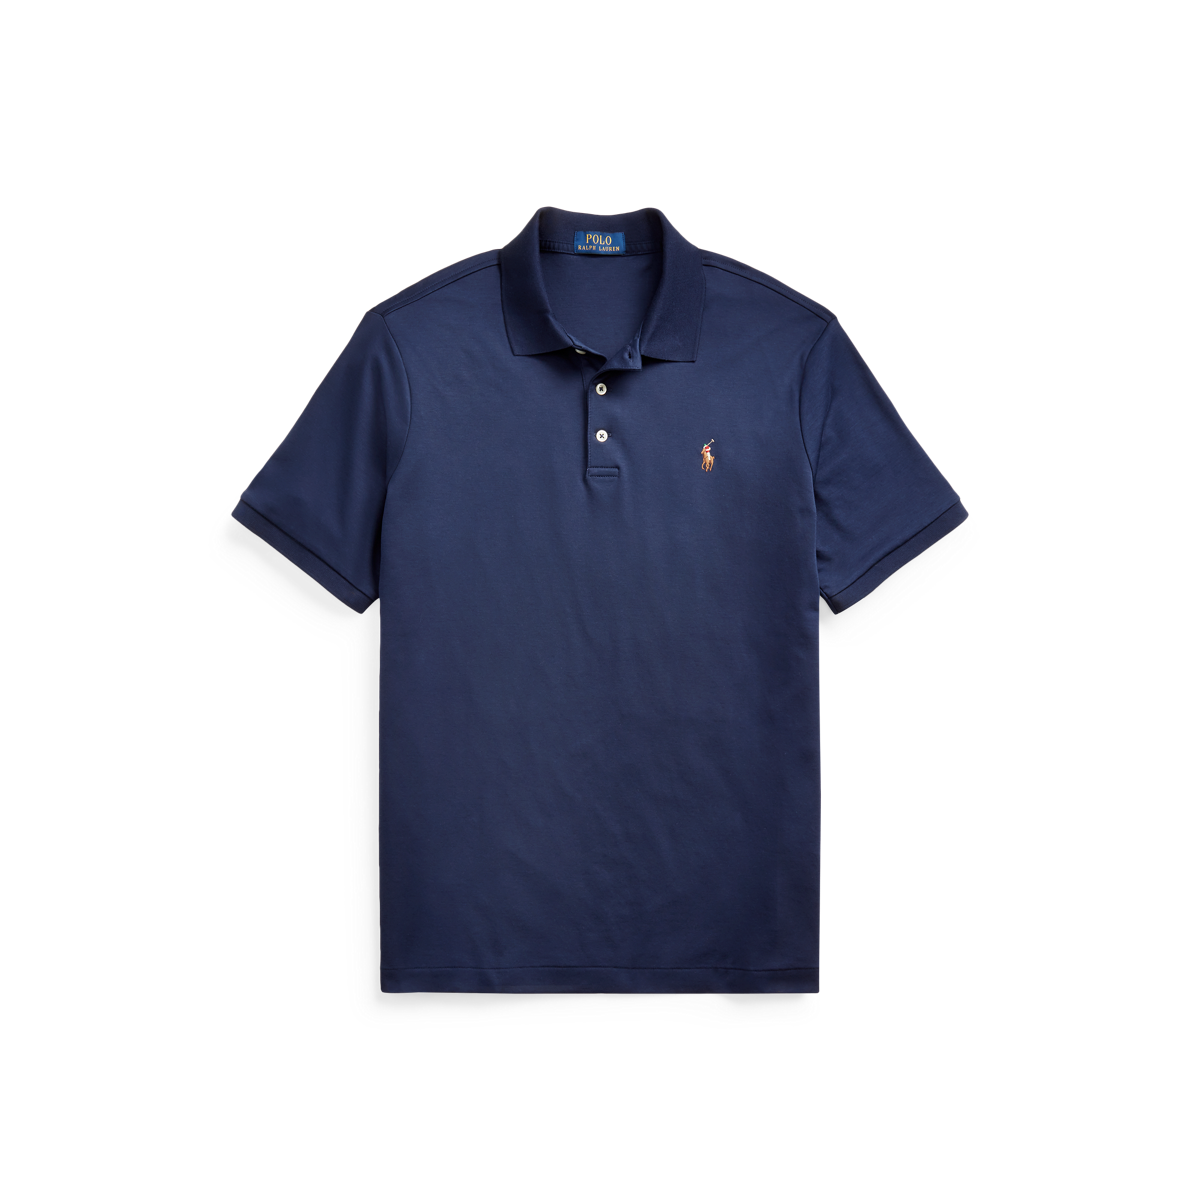 Men's Classic Fit Soft Cotton Polo Shirt